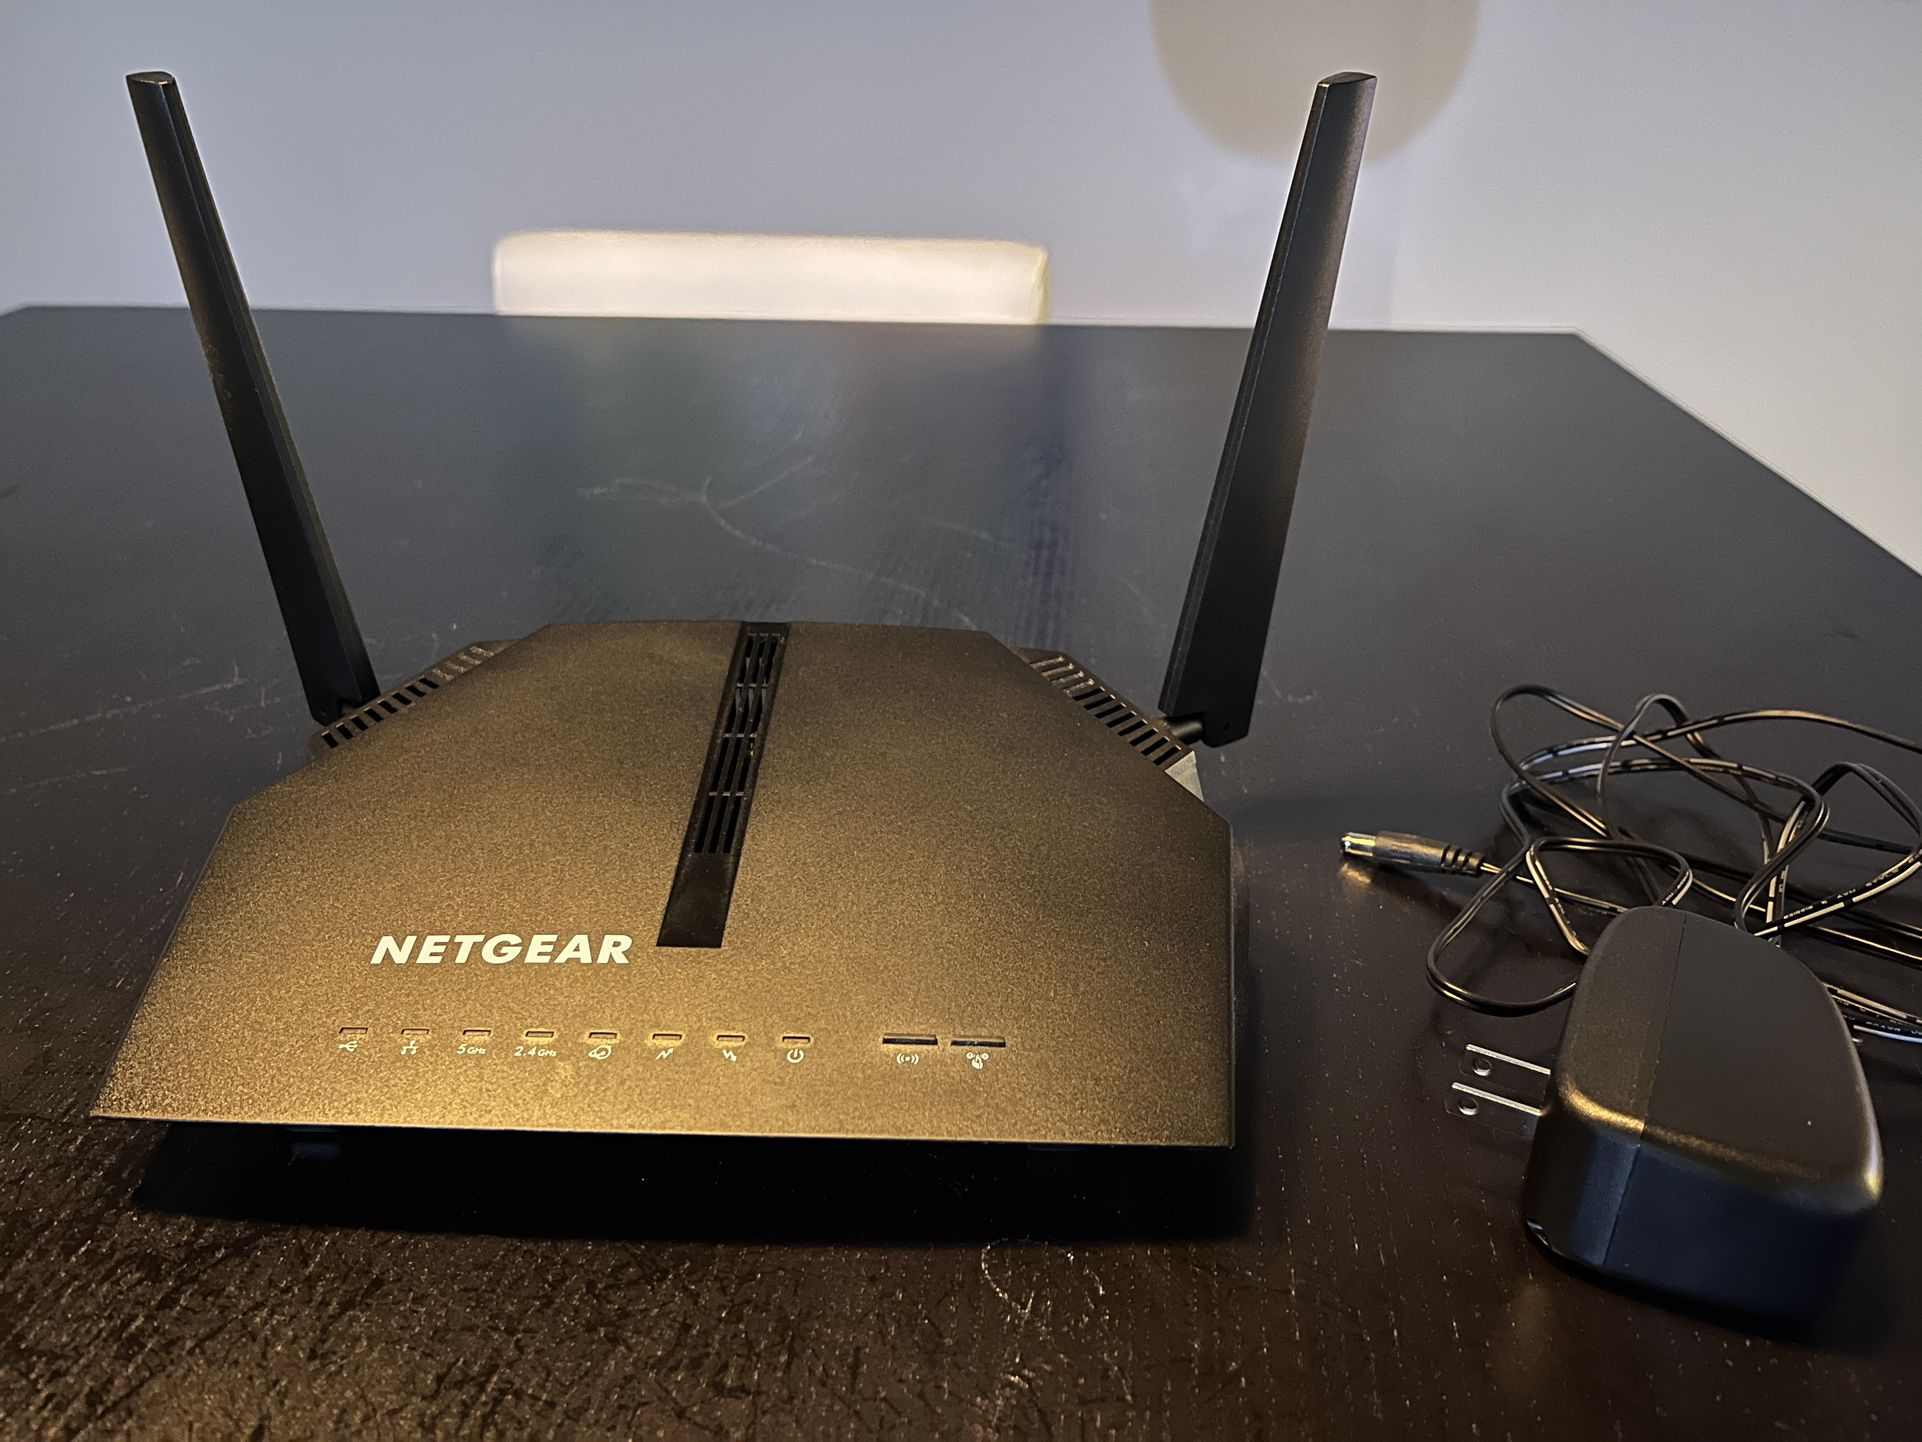 Netgear AC1200 Model C6220 WiFi Modem Router